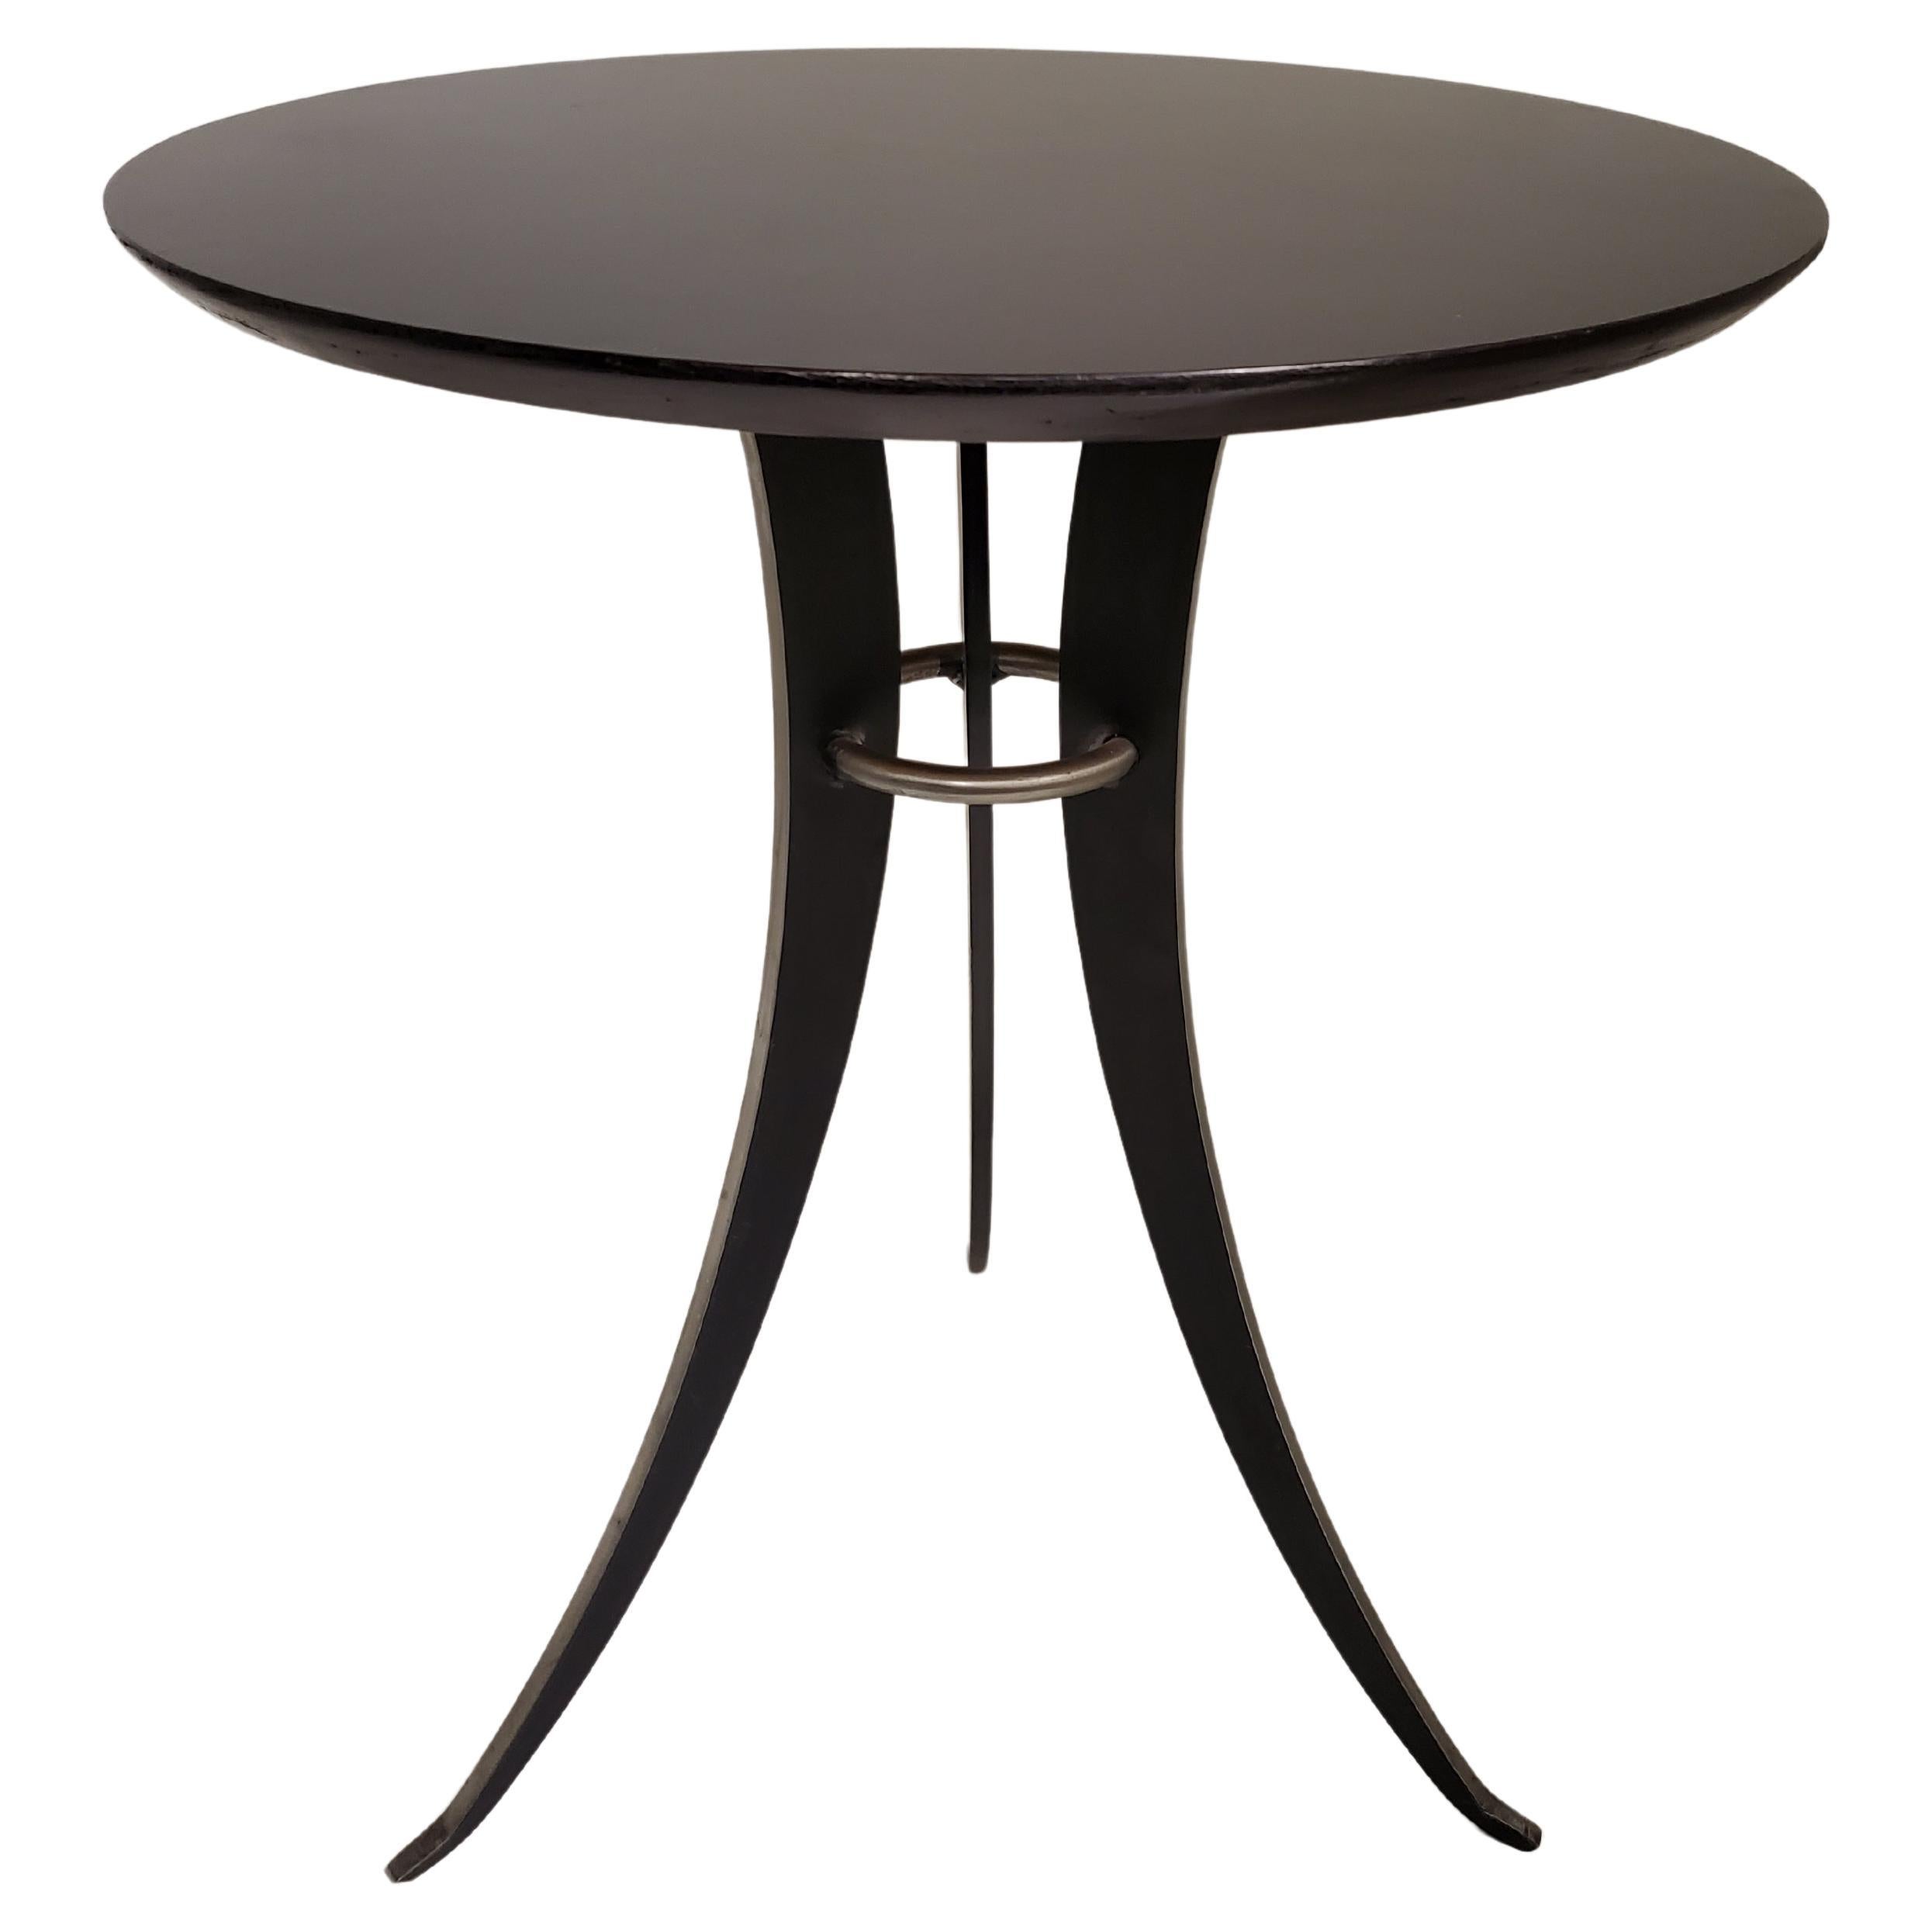 Table circulaire minimaliste en acier et bois ébénisé avec base à pattes tripodes 